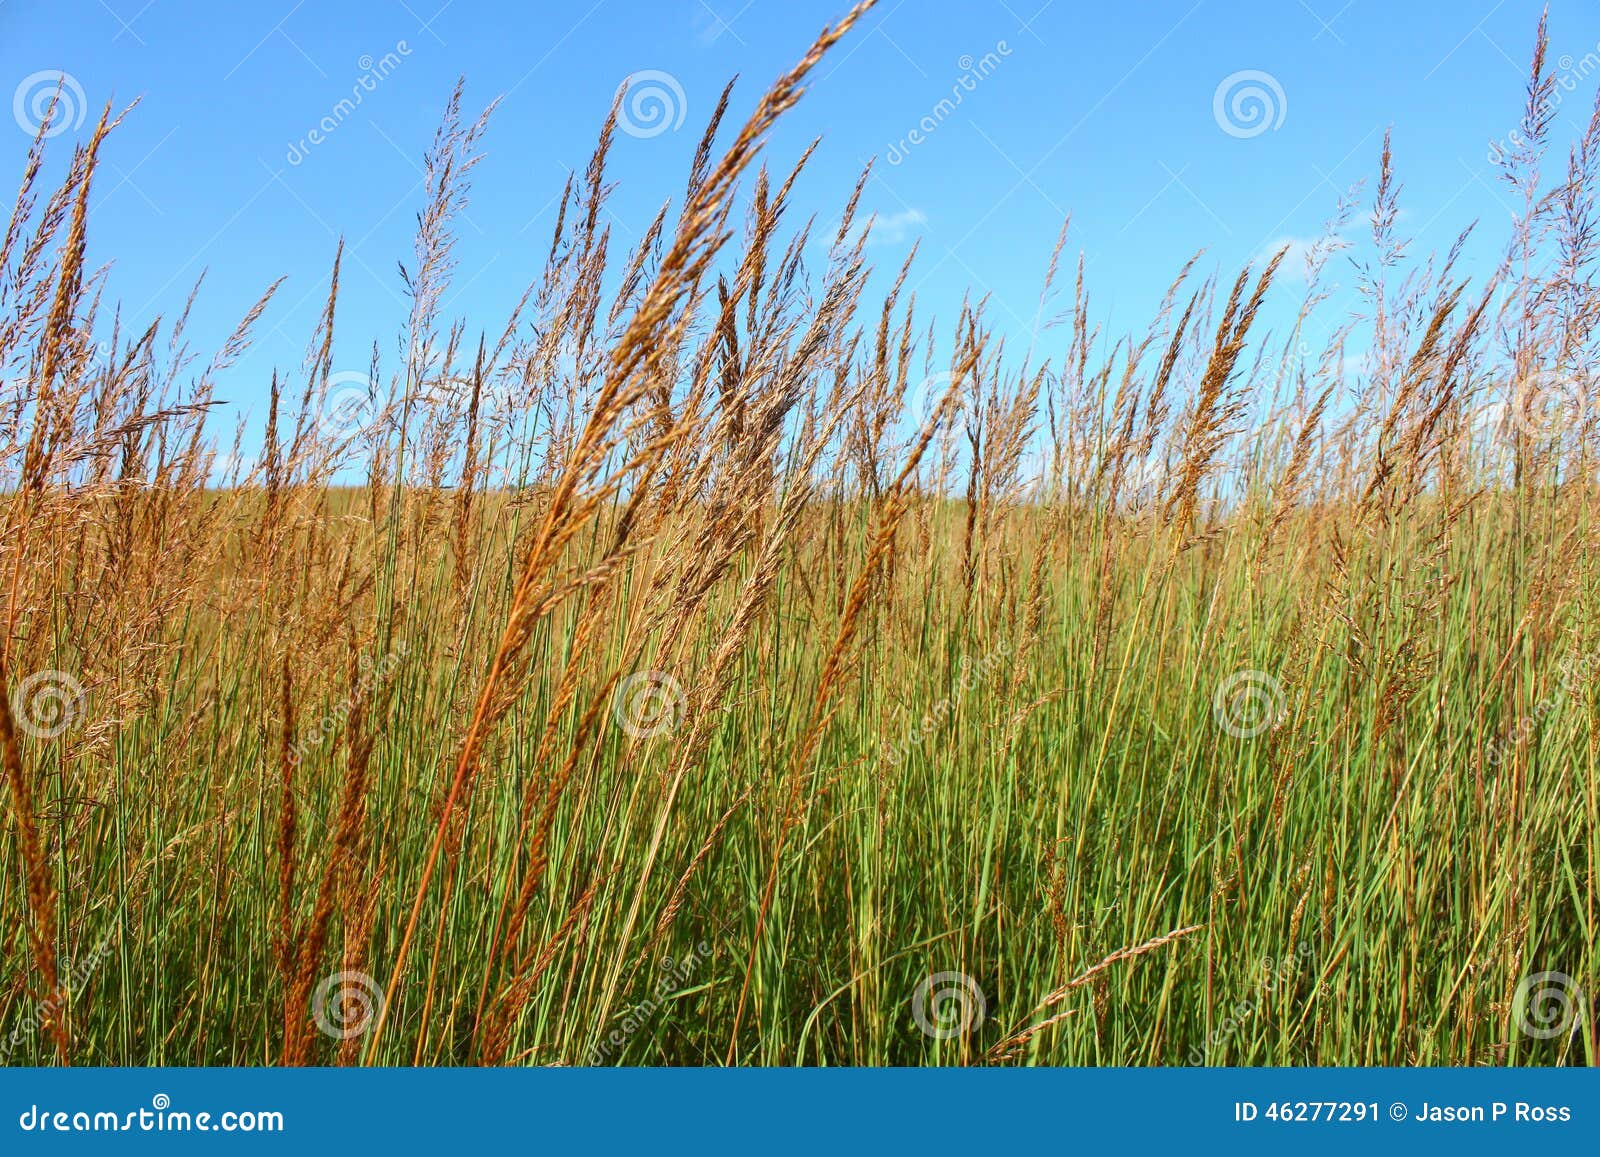 grasslands landscape illinois